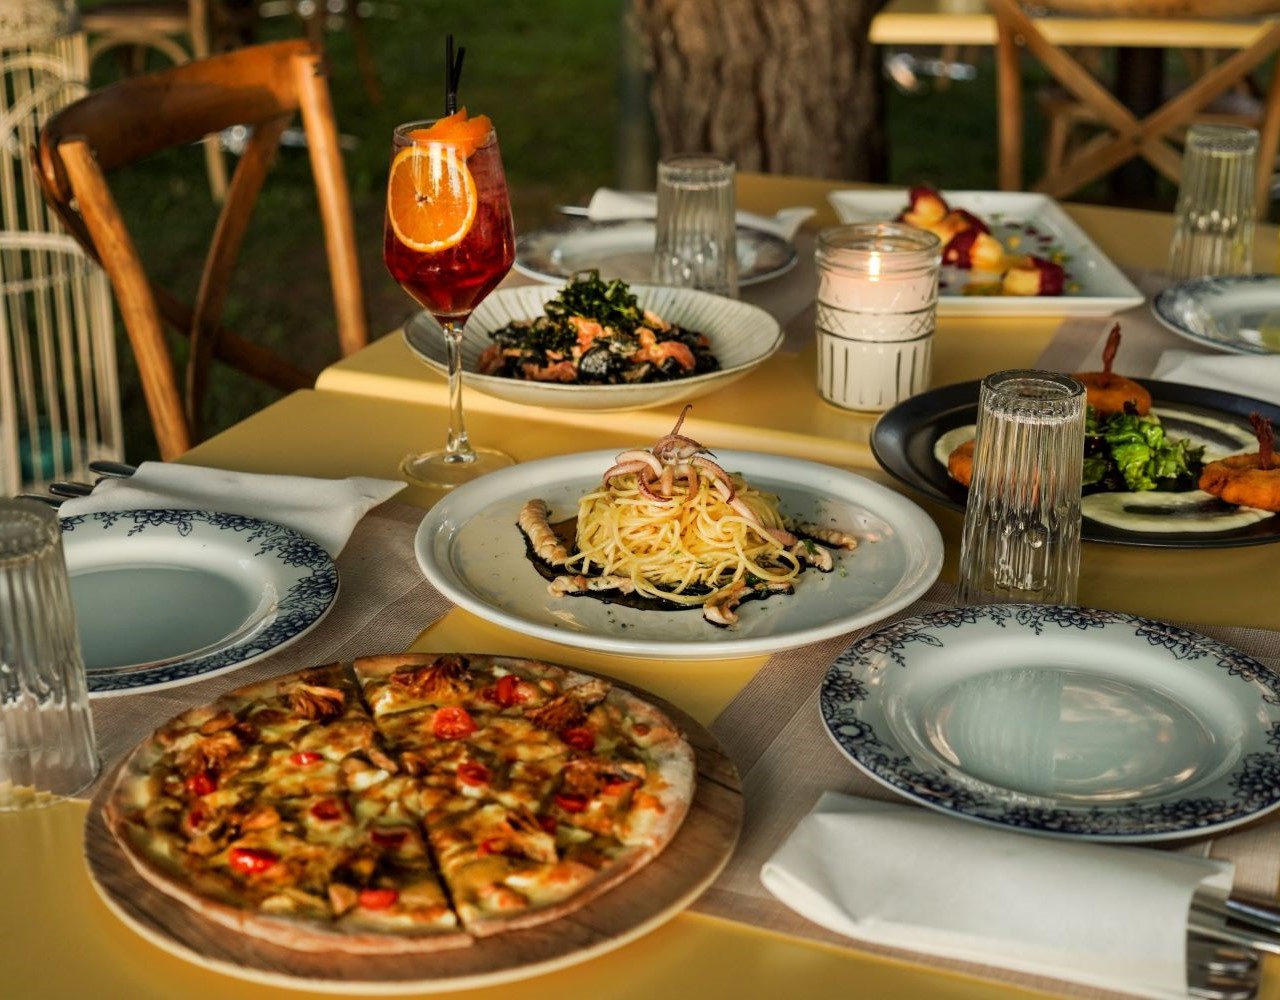 Οι βραδιές στο πάρκο του Alpino έχουν γεύση από Ιταλία και αύρα καλοκαιριού